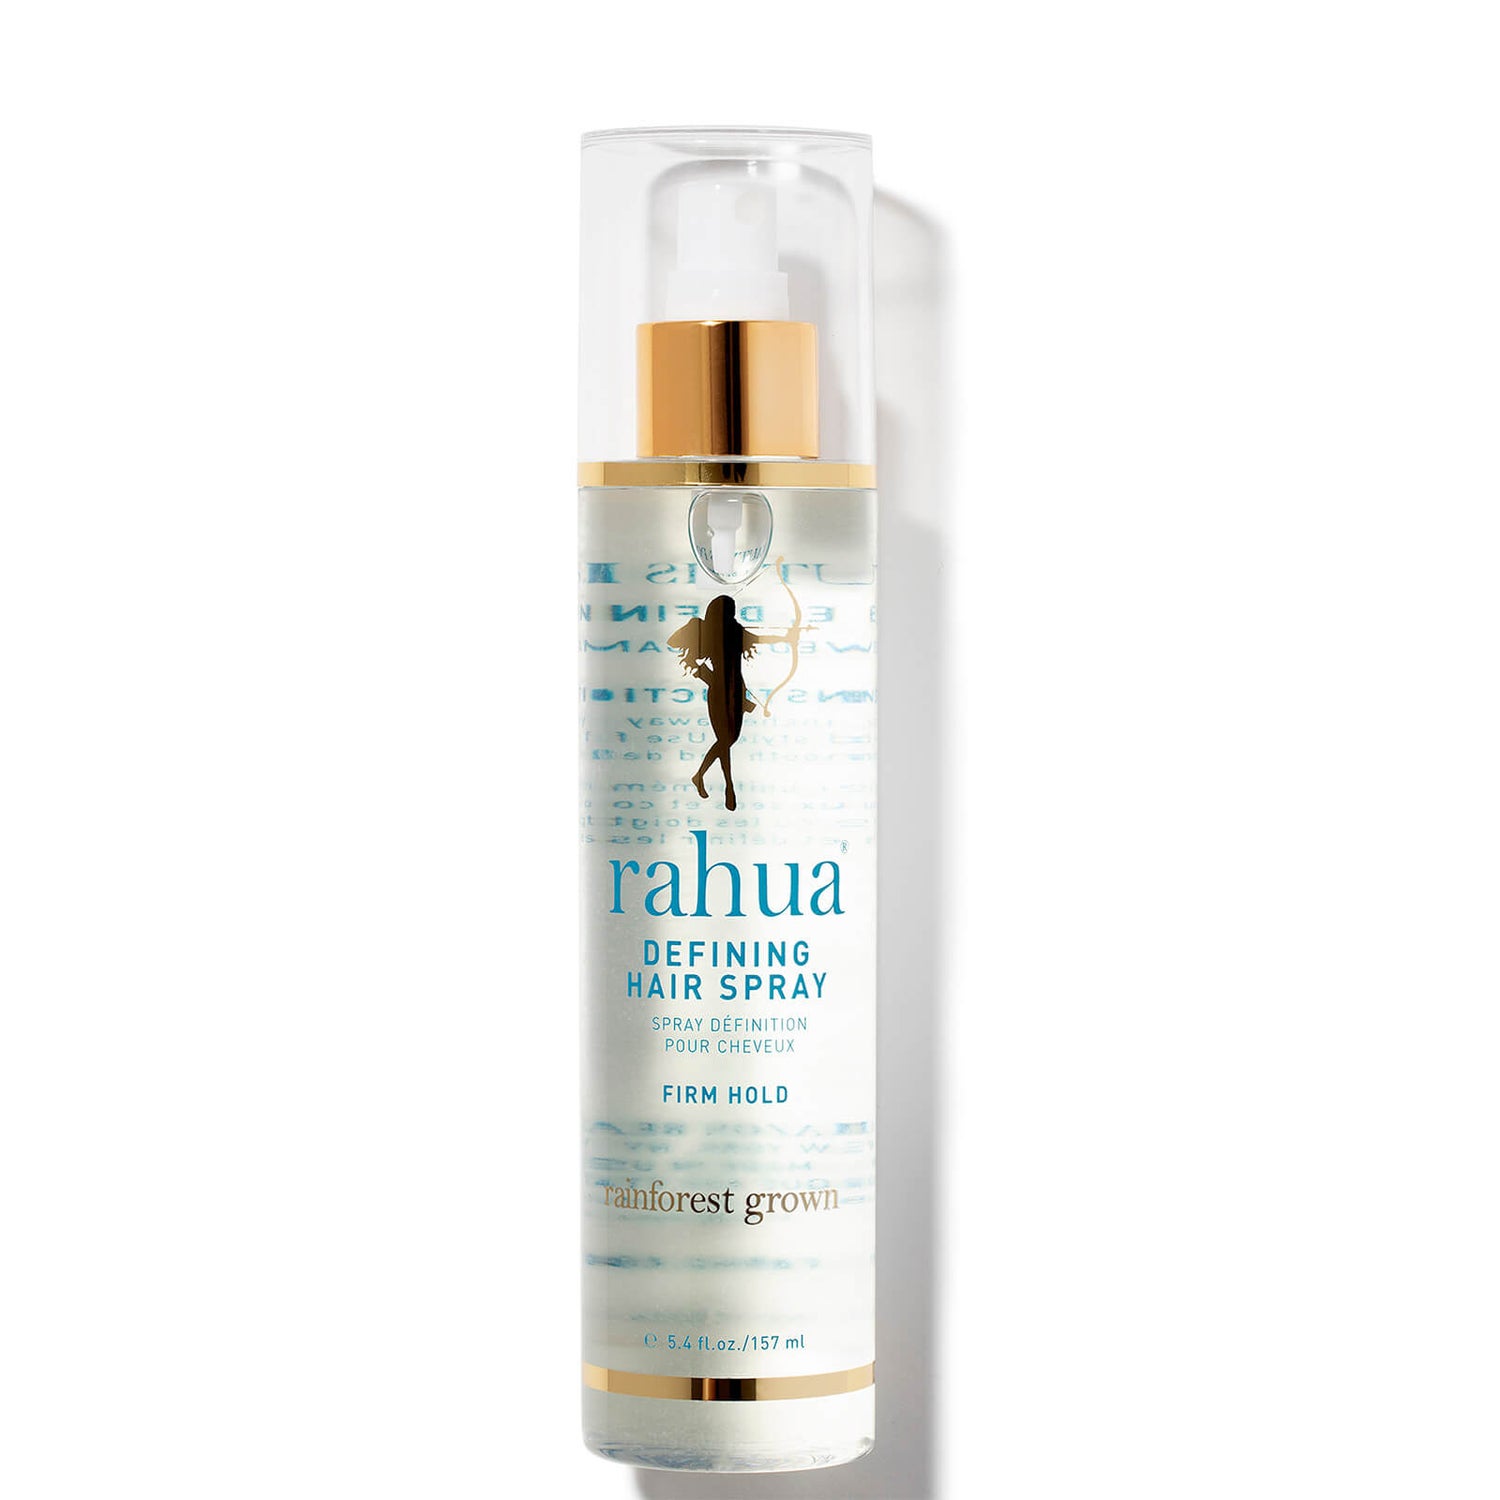 Rahua Defining Hair Spray (5.4 fl. oz.)